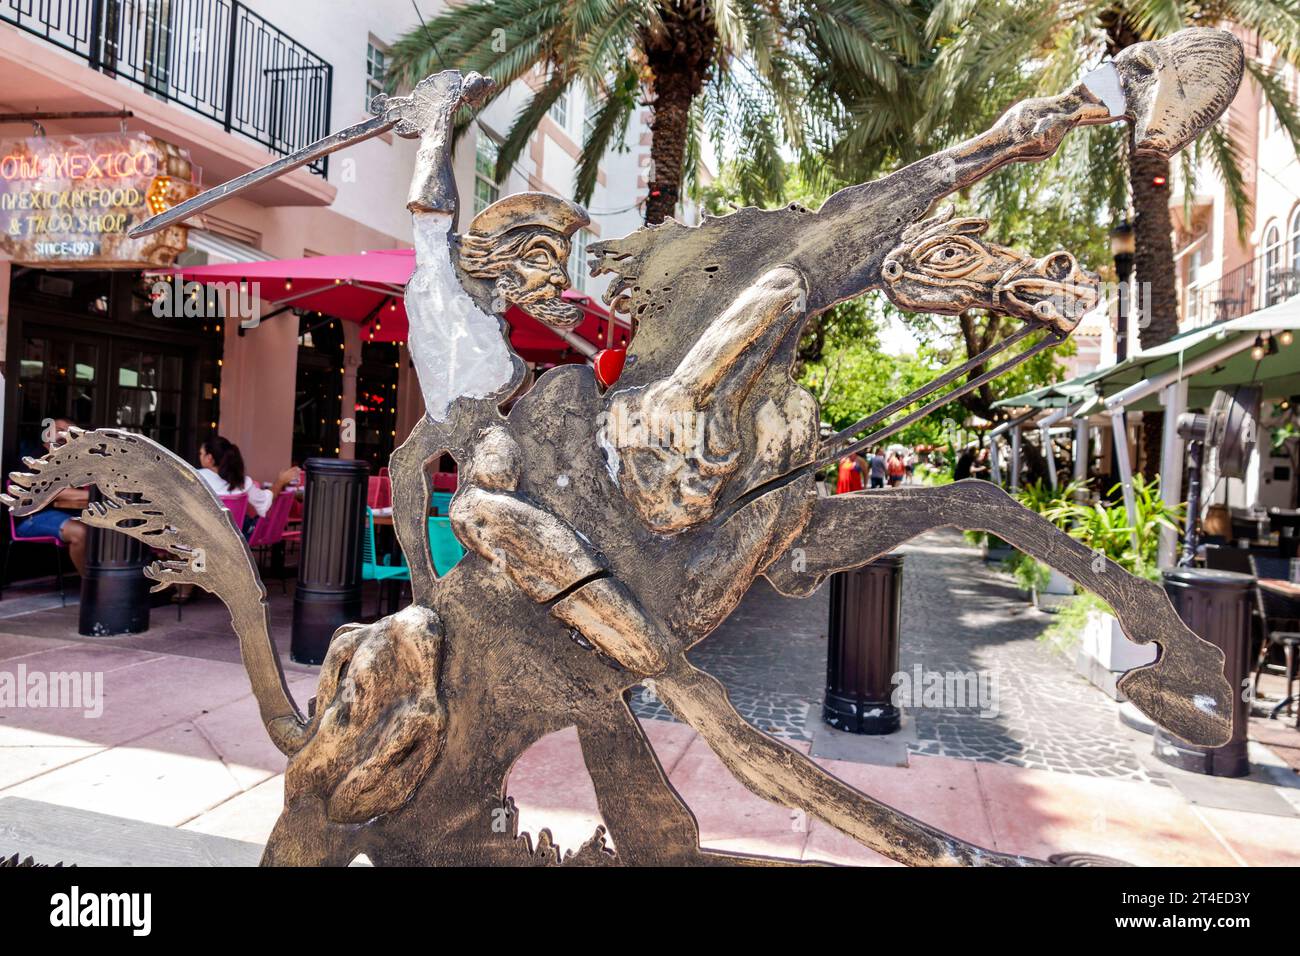 Miami Beach Florida, Espanola Way historisches spanisches Dorf, Außenfassade, Hotel vor dem Eingang des Gebäudes, Kunstwerke Skulptur Don Quixote Charakter f Stockfoto